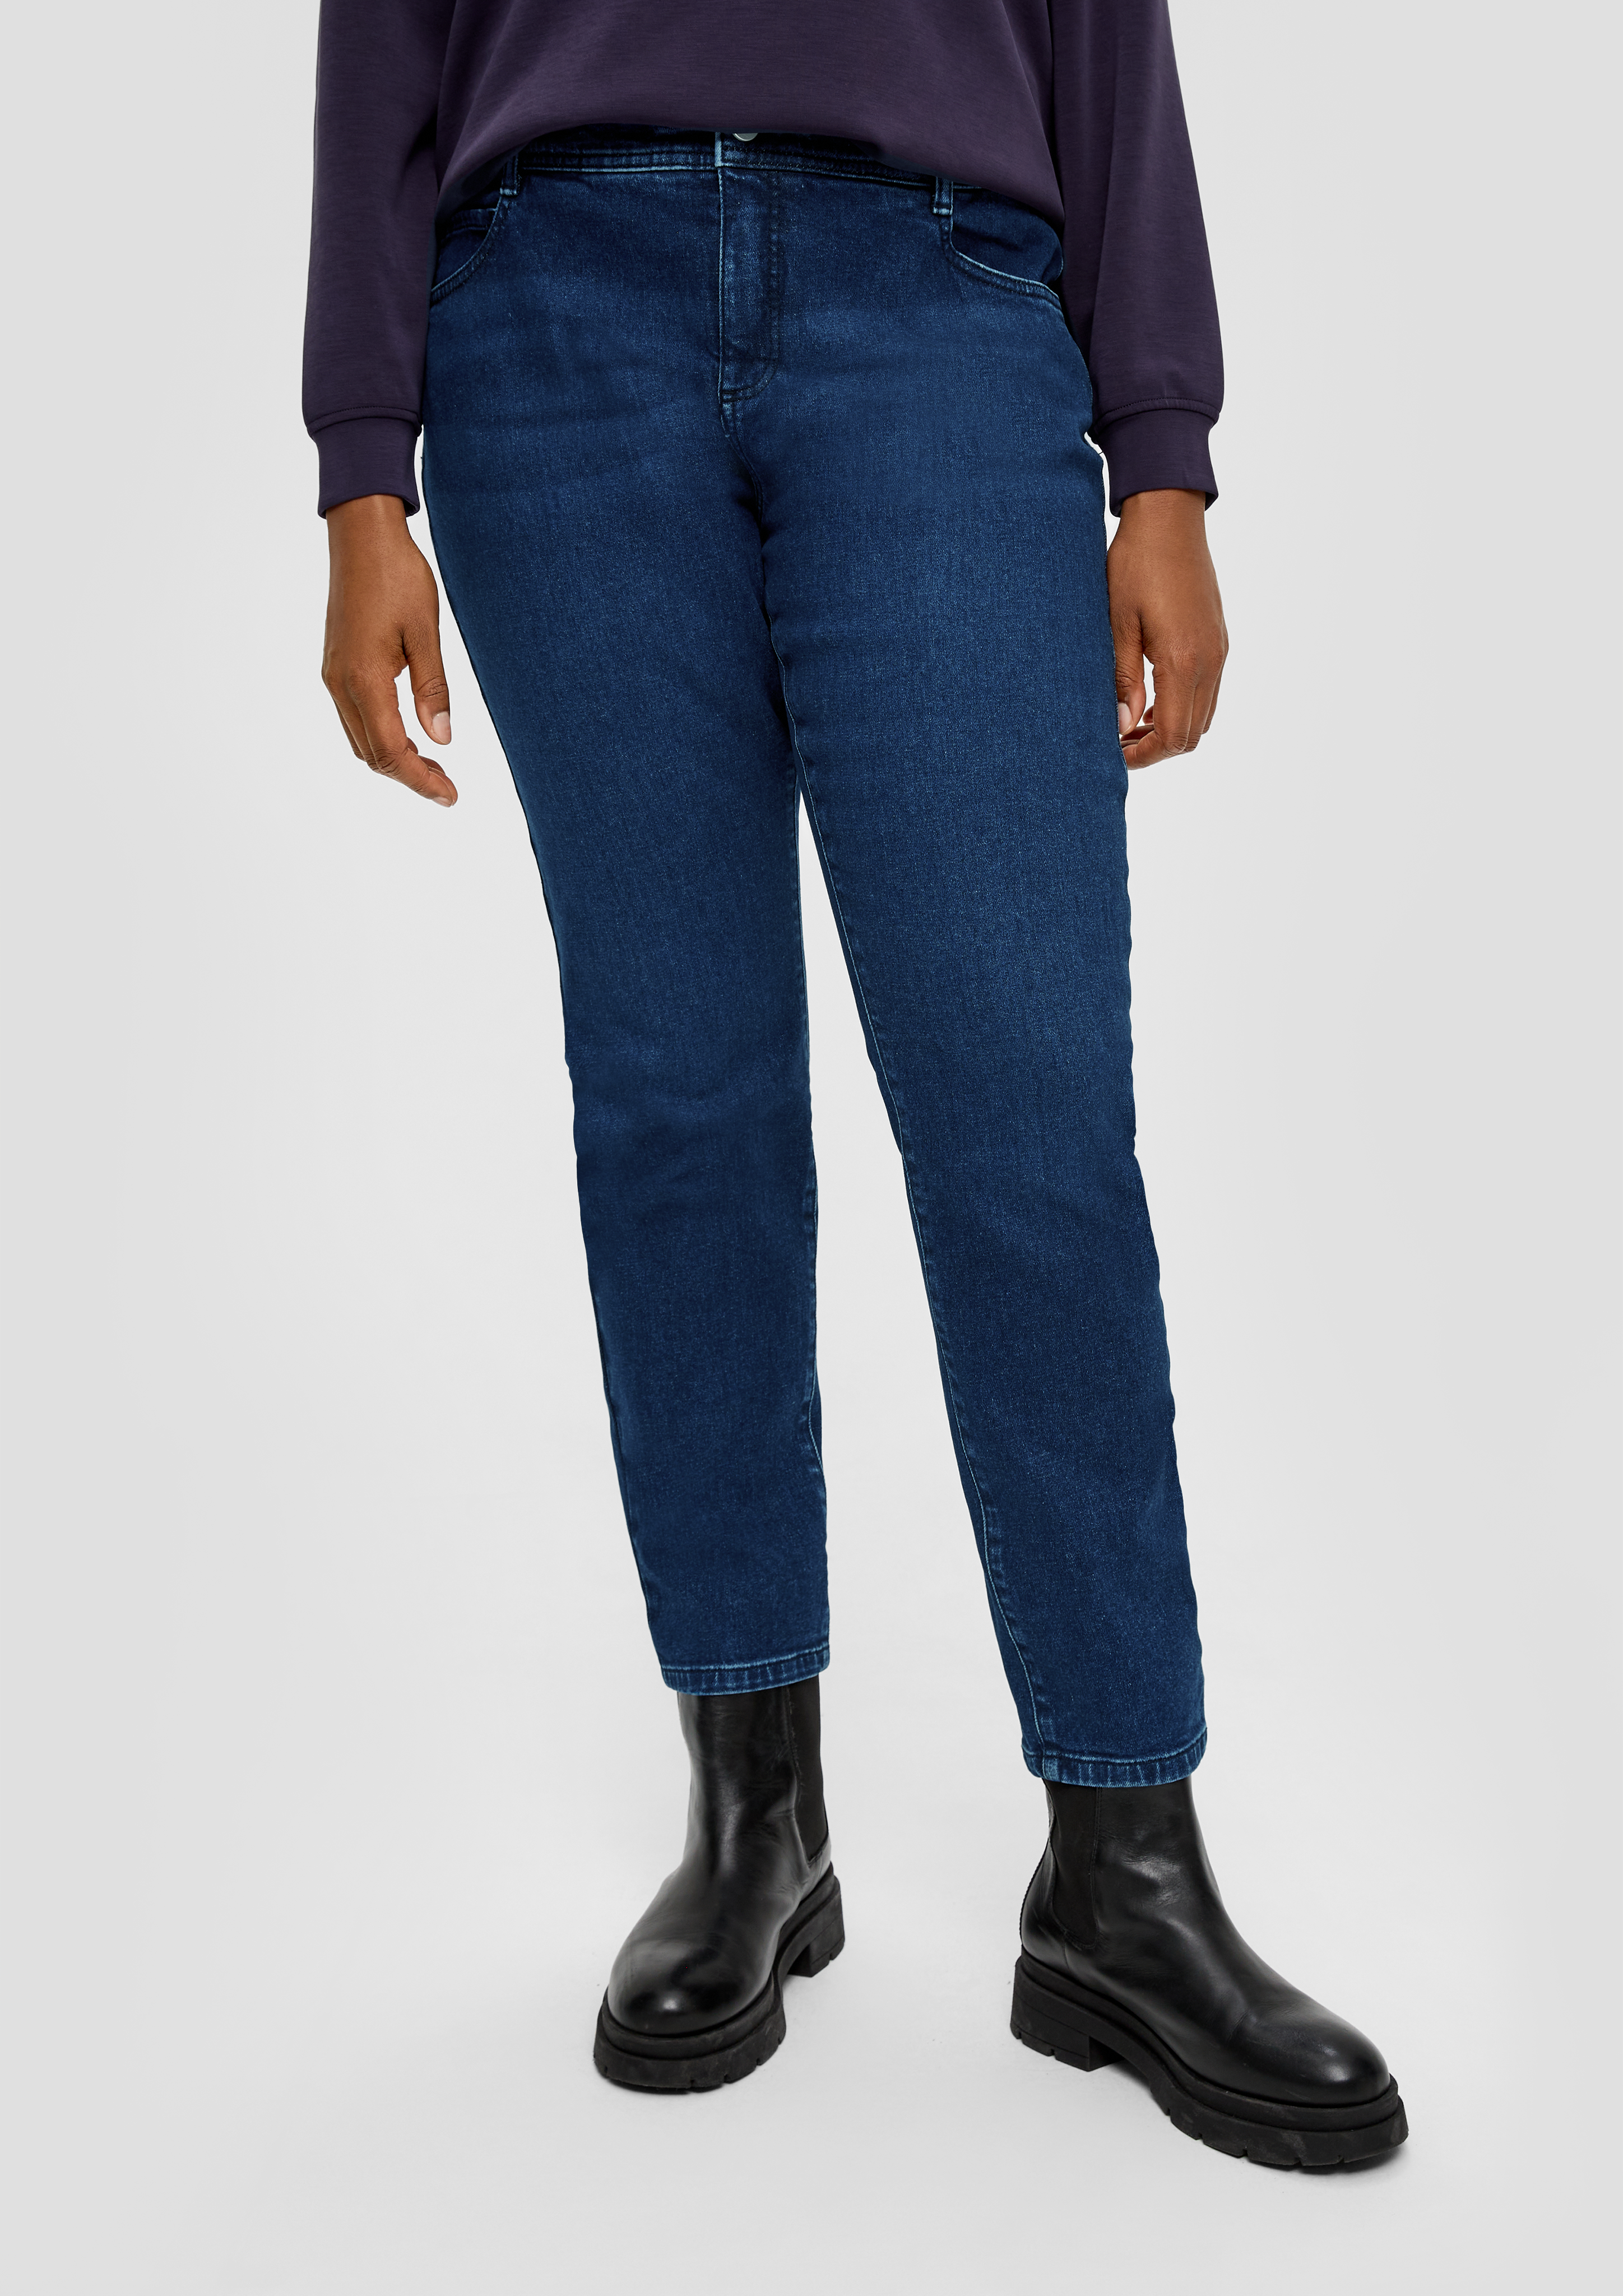 Jeans / skinny fit / mid rise / skinny leg / five-pocket design - blue | s. Oliver